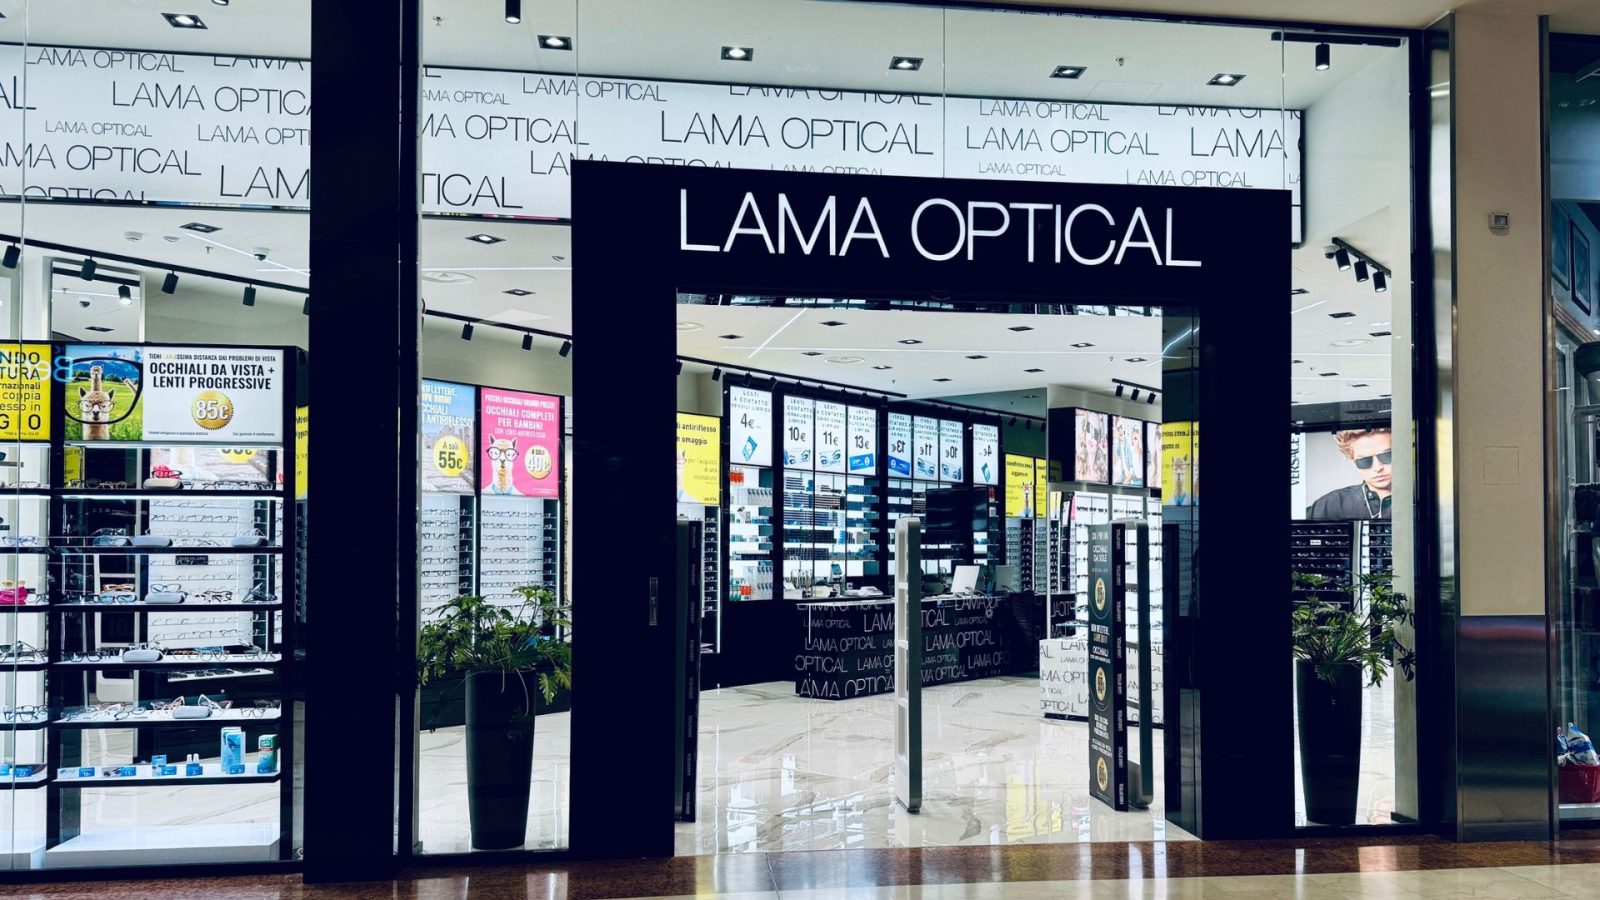 New Look – Lama Optical